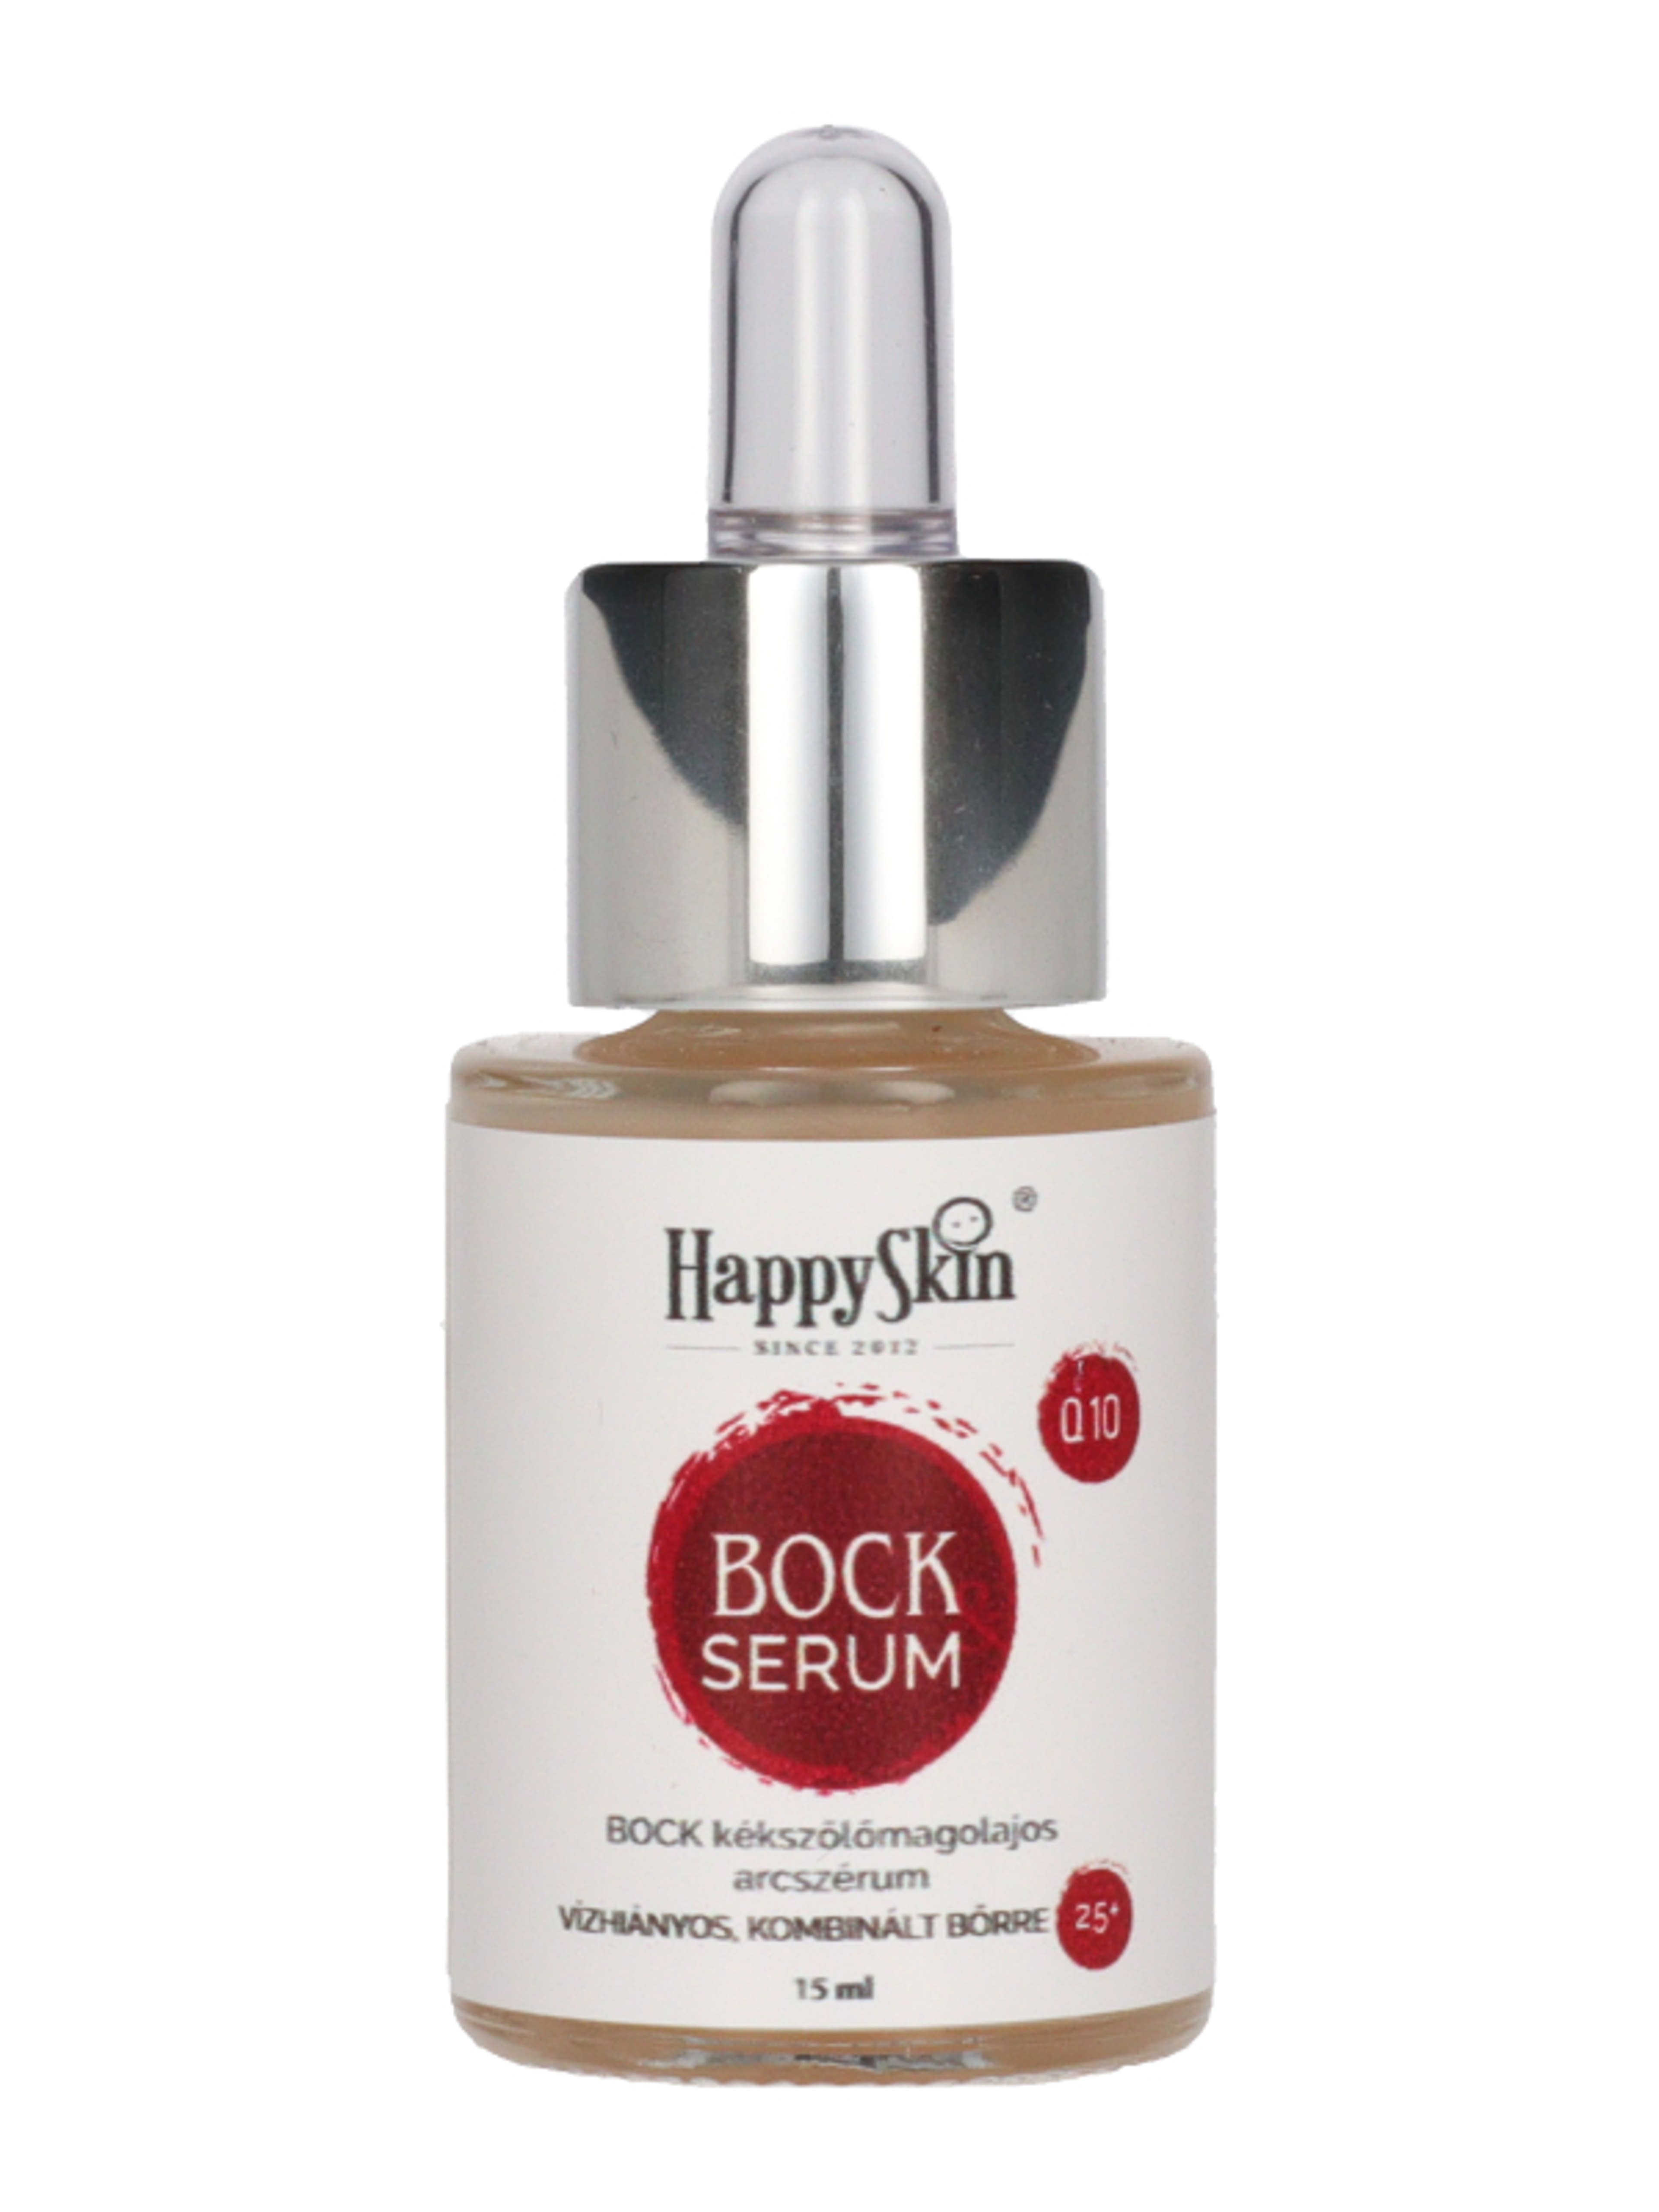 HappySkin Bock szérum - 15 ml-1